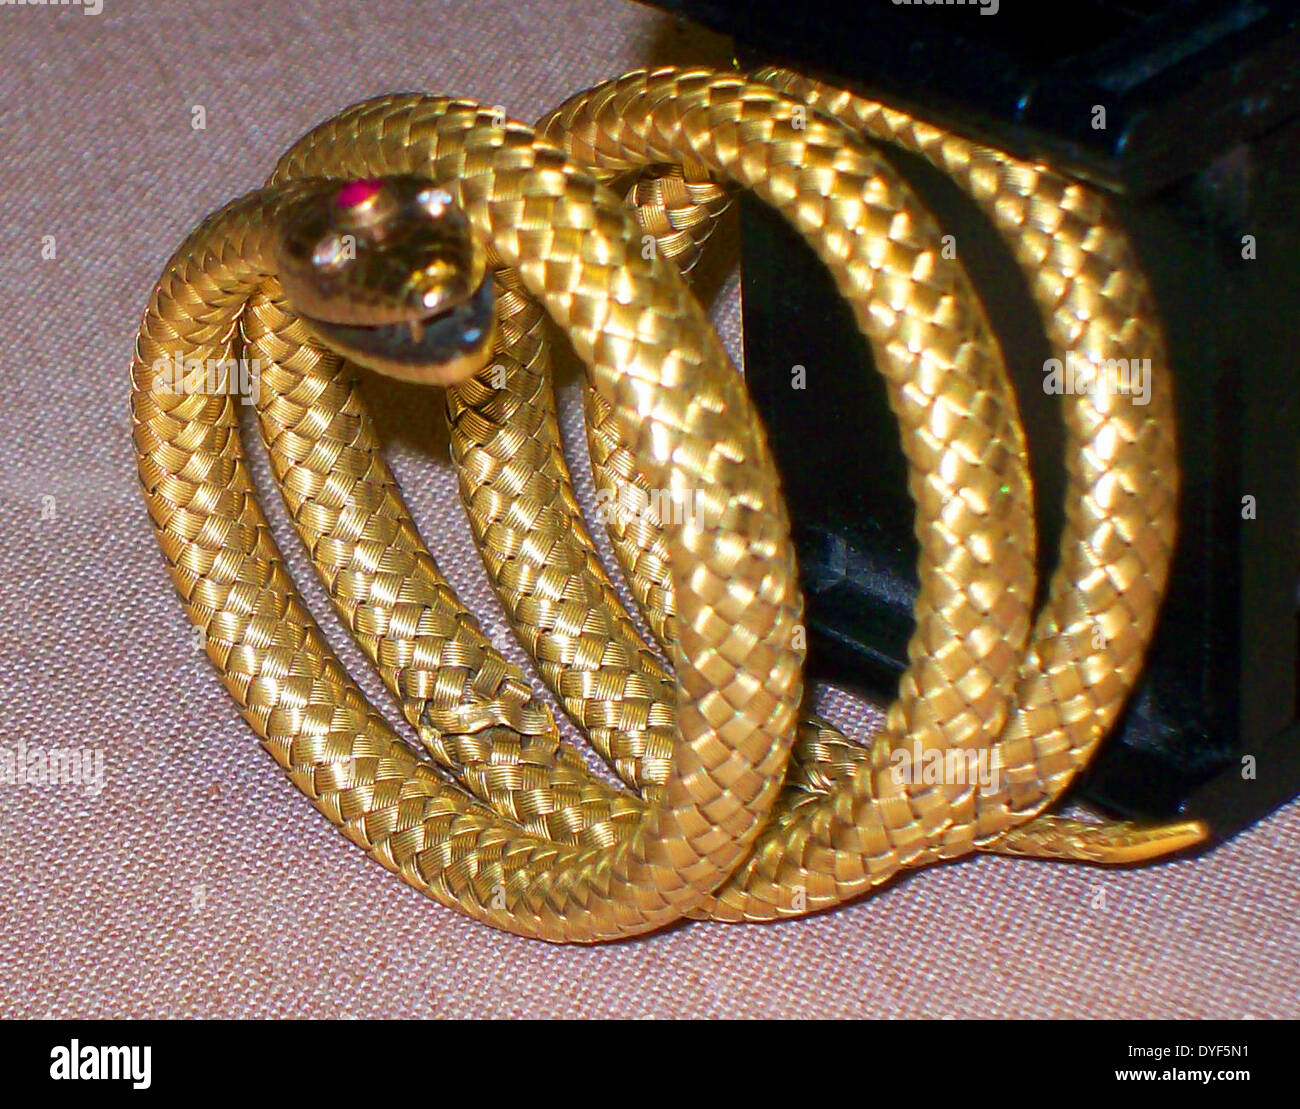 Coiling Snake Hand Bracelet